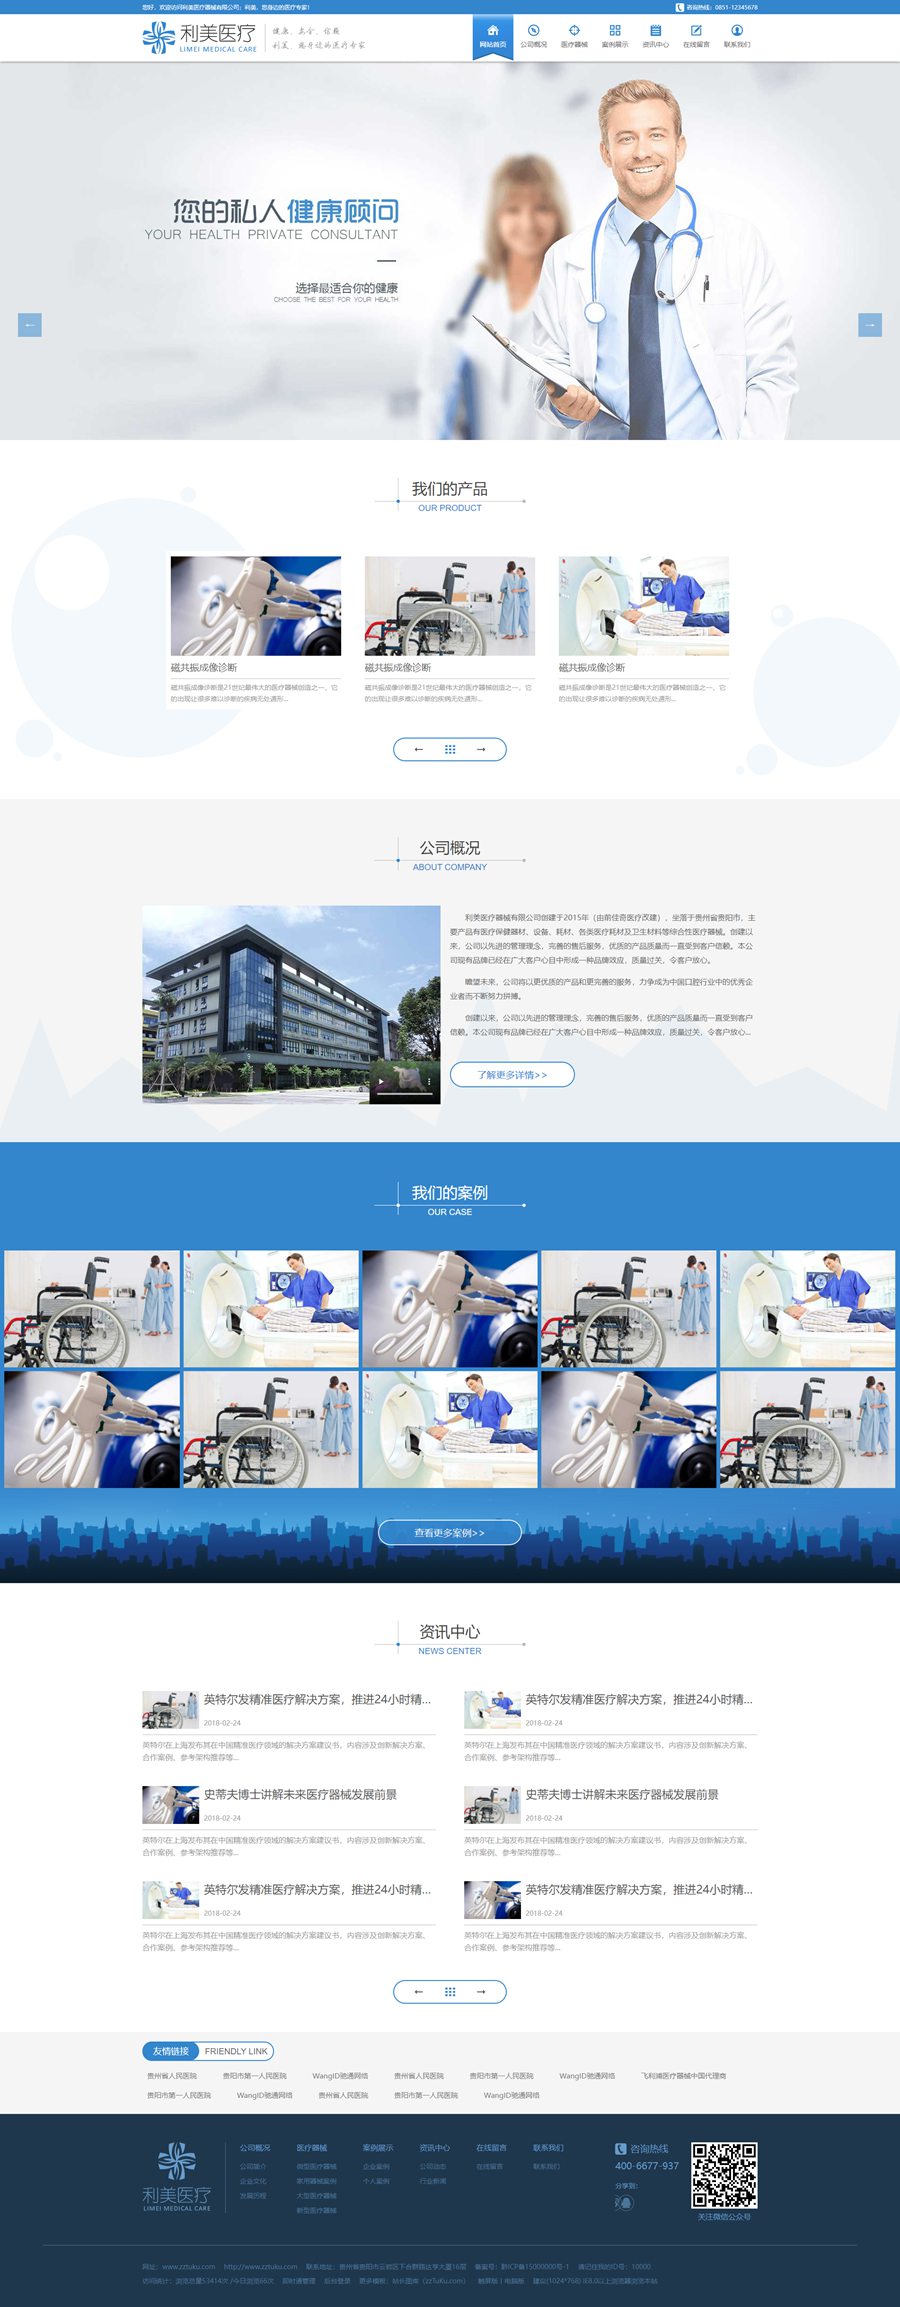 蓝色大气的响应式医疗器械公司网站模板